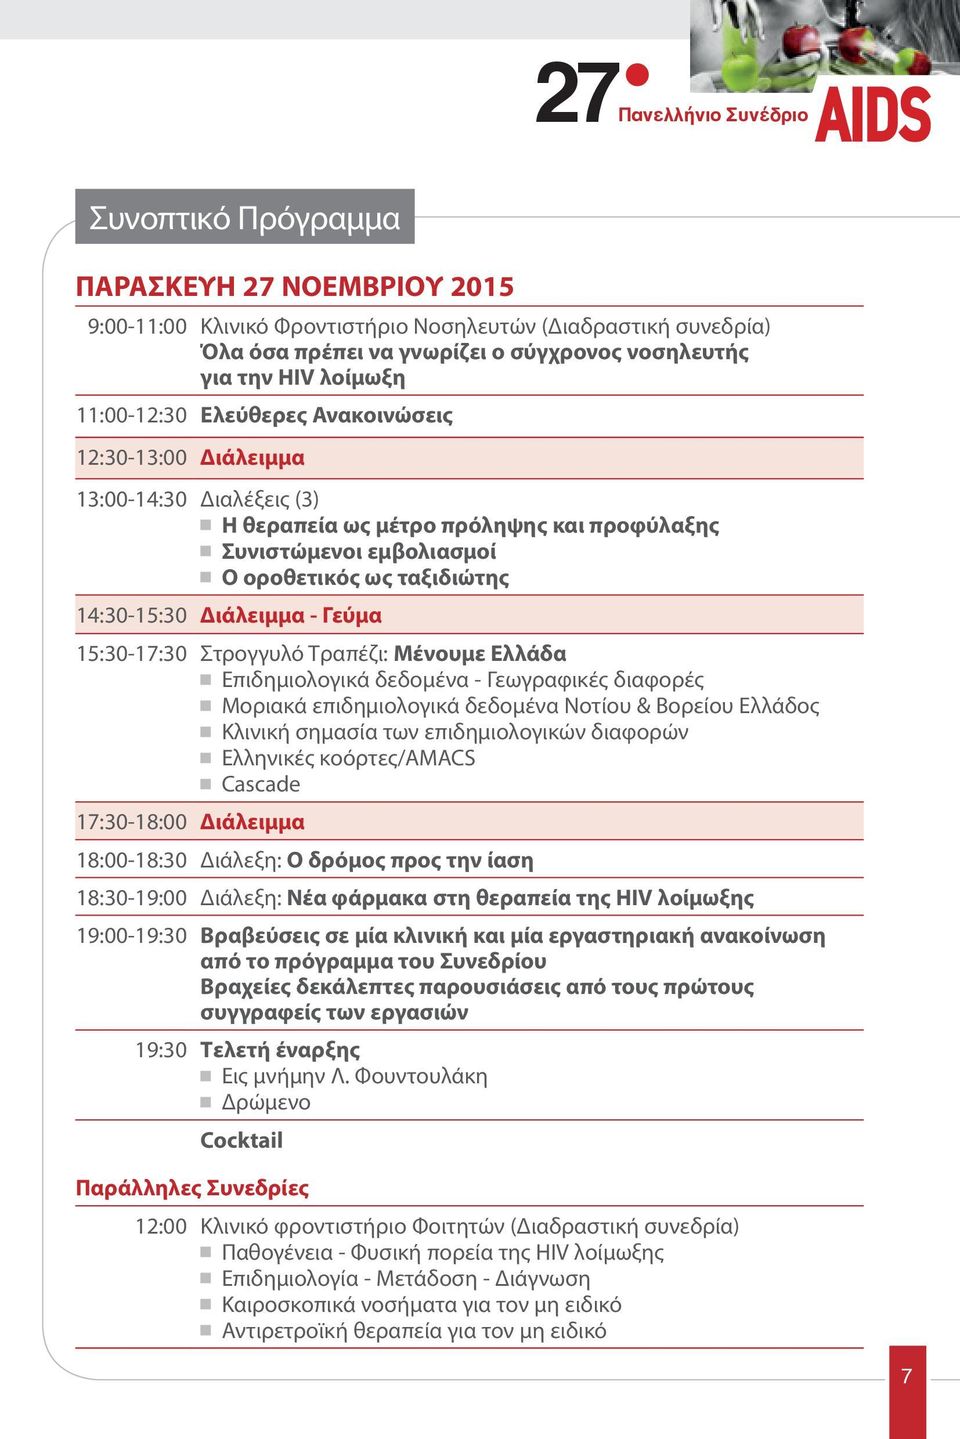 Διάλειμμα - Γεύμα 15:30-17:30 Στρογγυλό Τραπέζι: Μένουμε Ελλάδα Επιδημιολογικά δεδομένα - Γεωγραφικές διαφορές Μοριακά επιδημιολογικά δεδομένα Νοτίου & Βορείου Ελλάδος Κλινική σημασία των